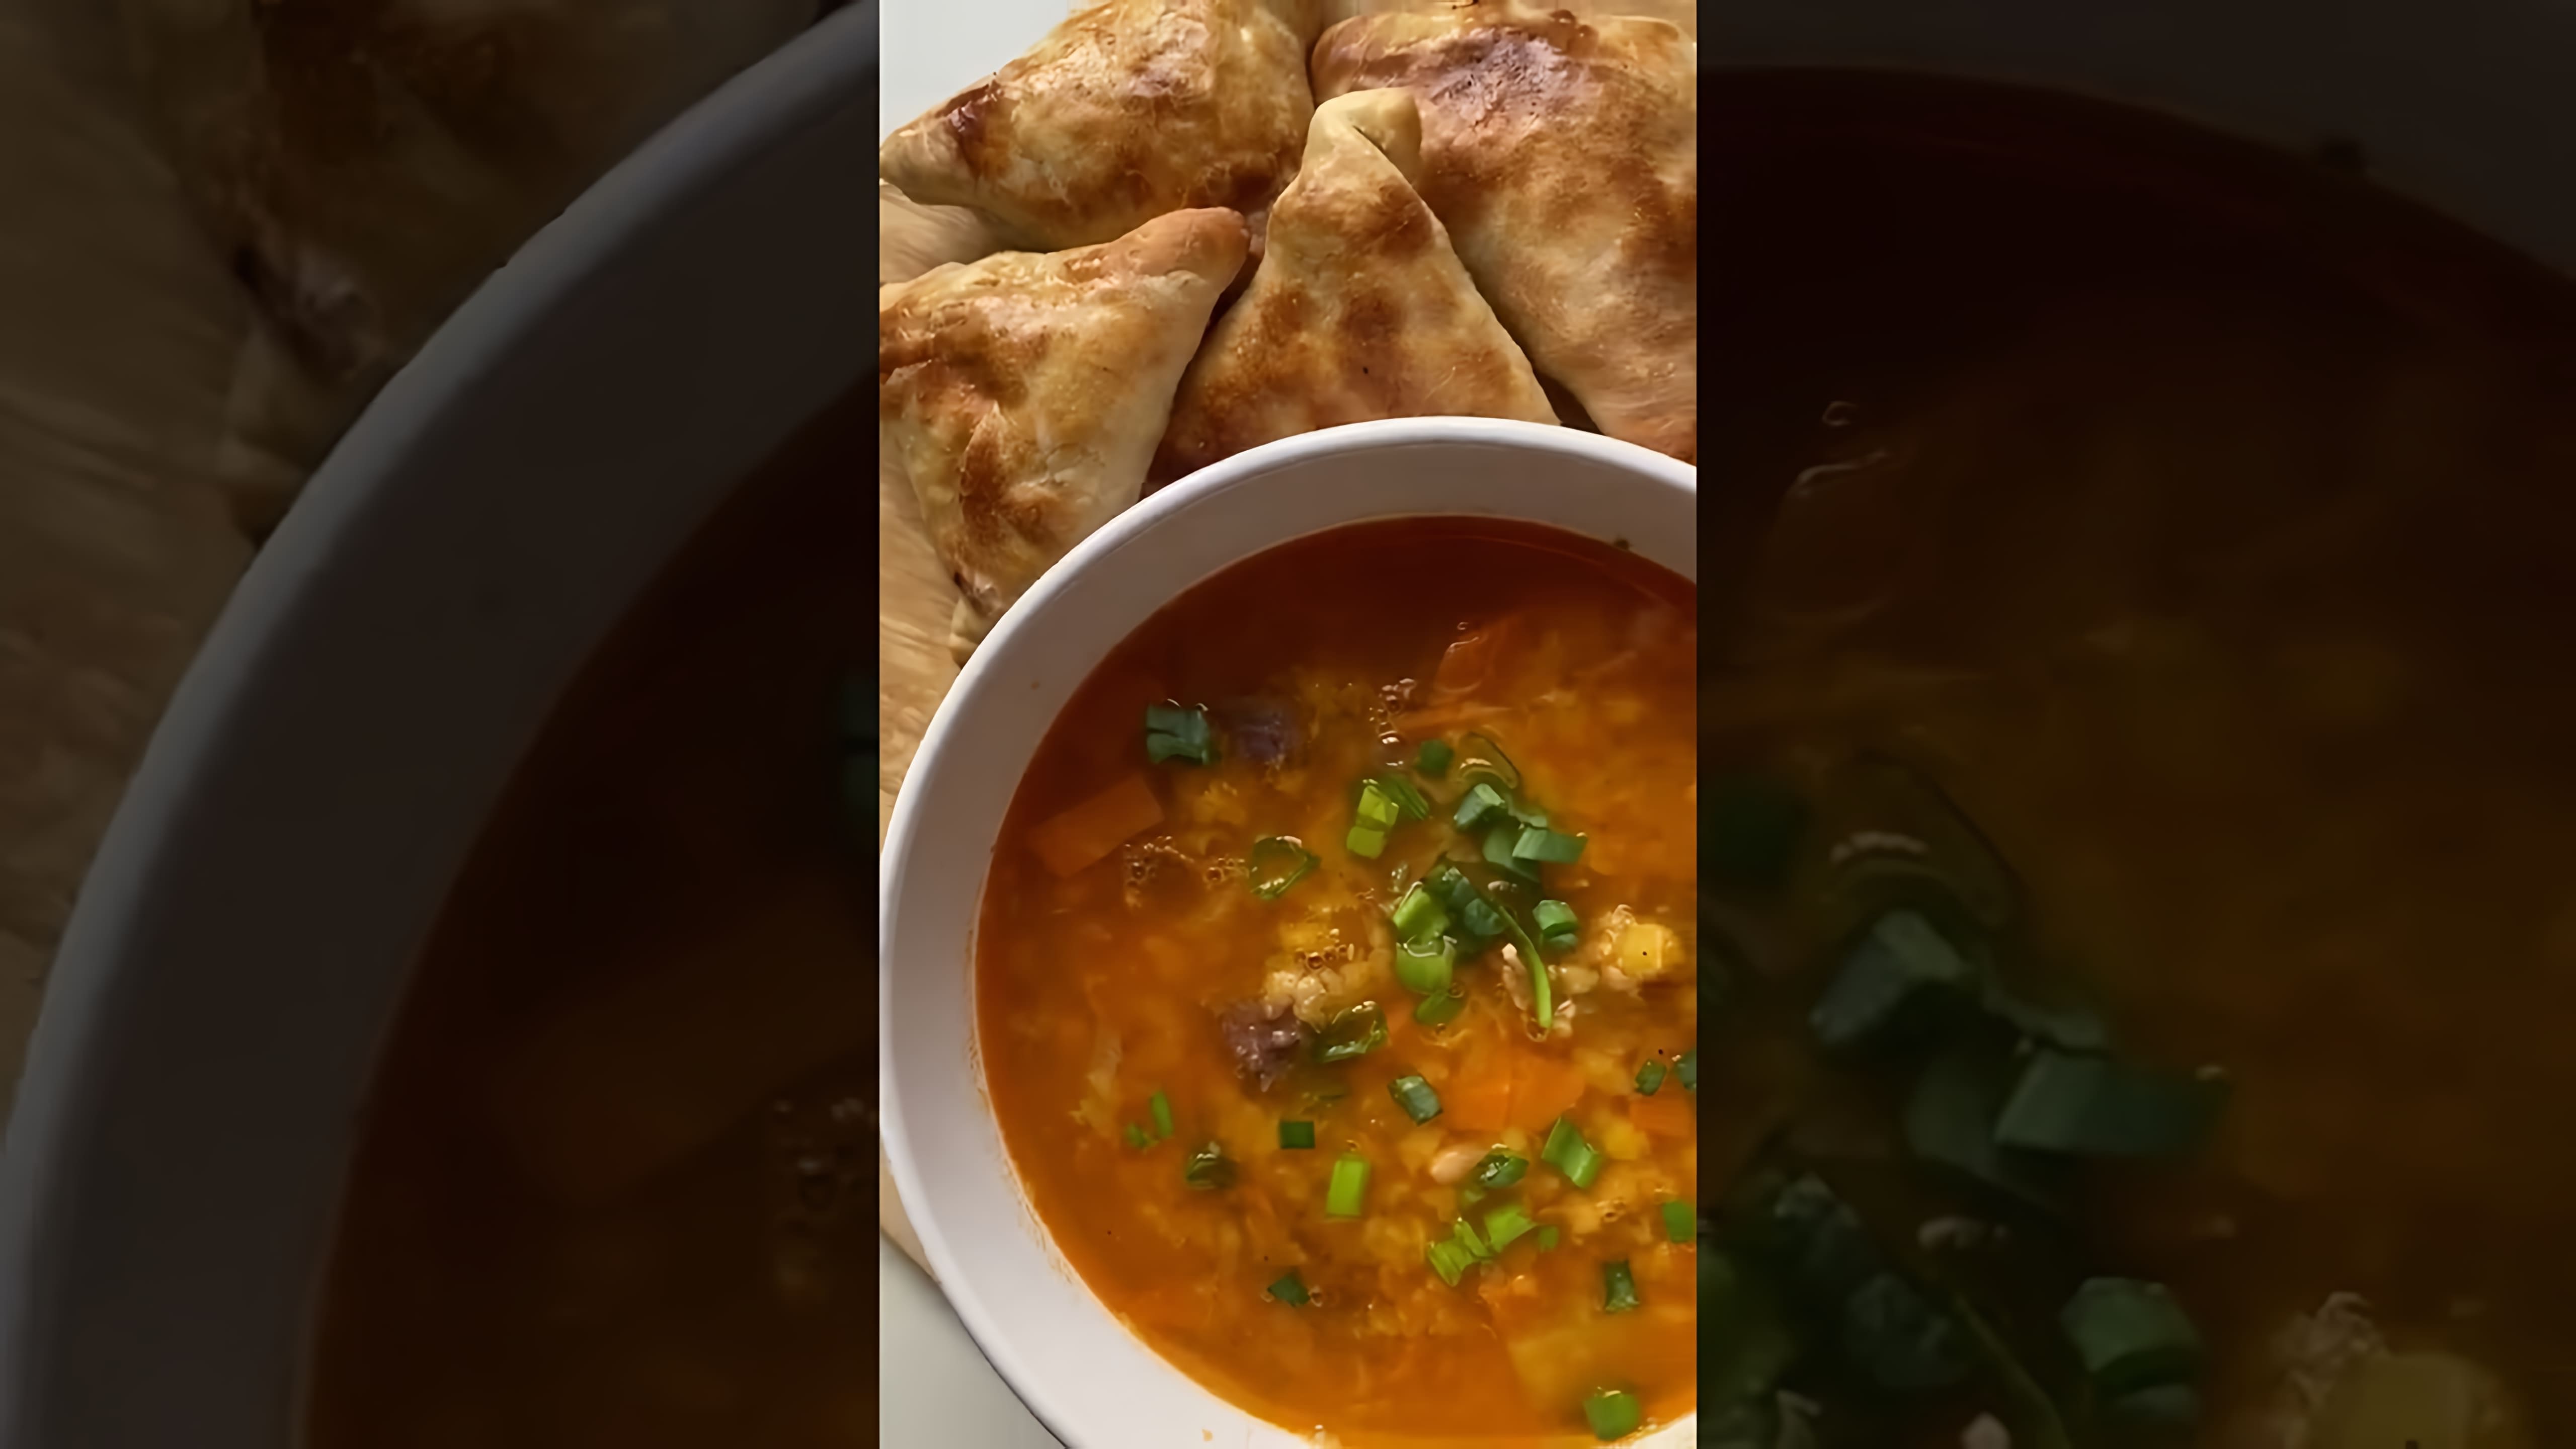 Гороховый суп - это вкусное и питательное блюдо, которое можно приготовить в домашних условиях